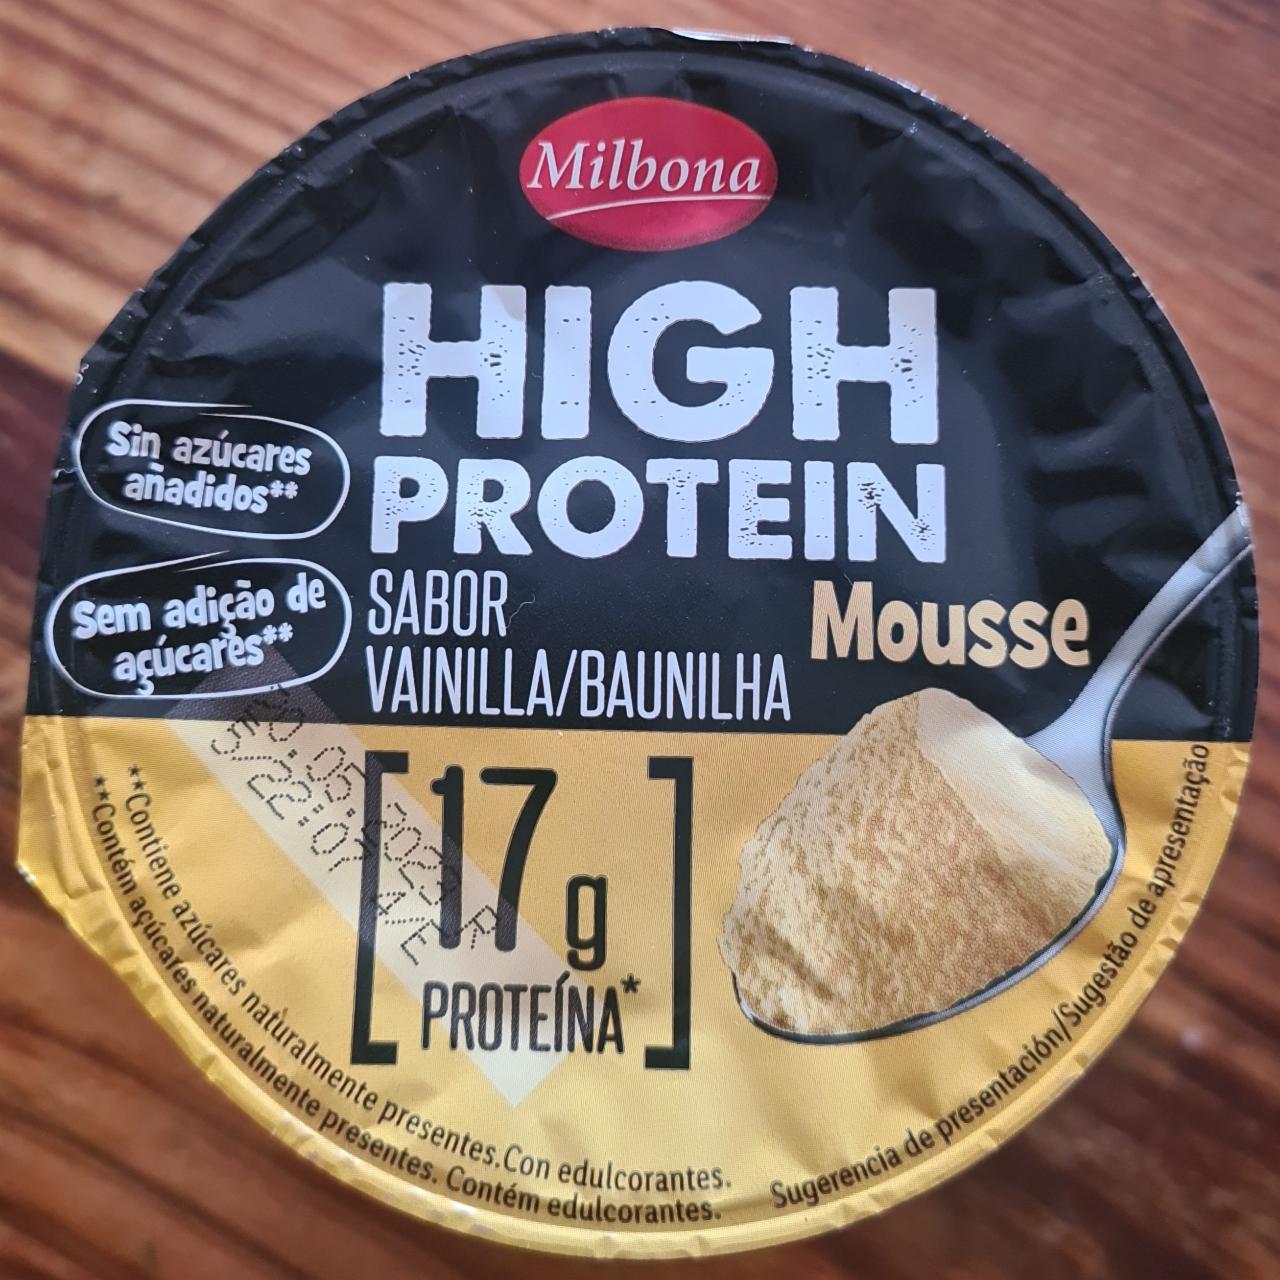 Képek - High protein Mousse Vanília Milbona